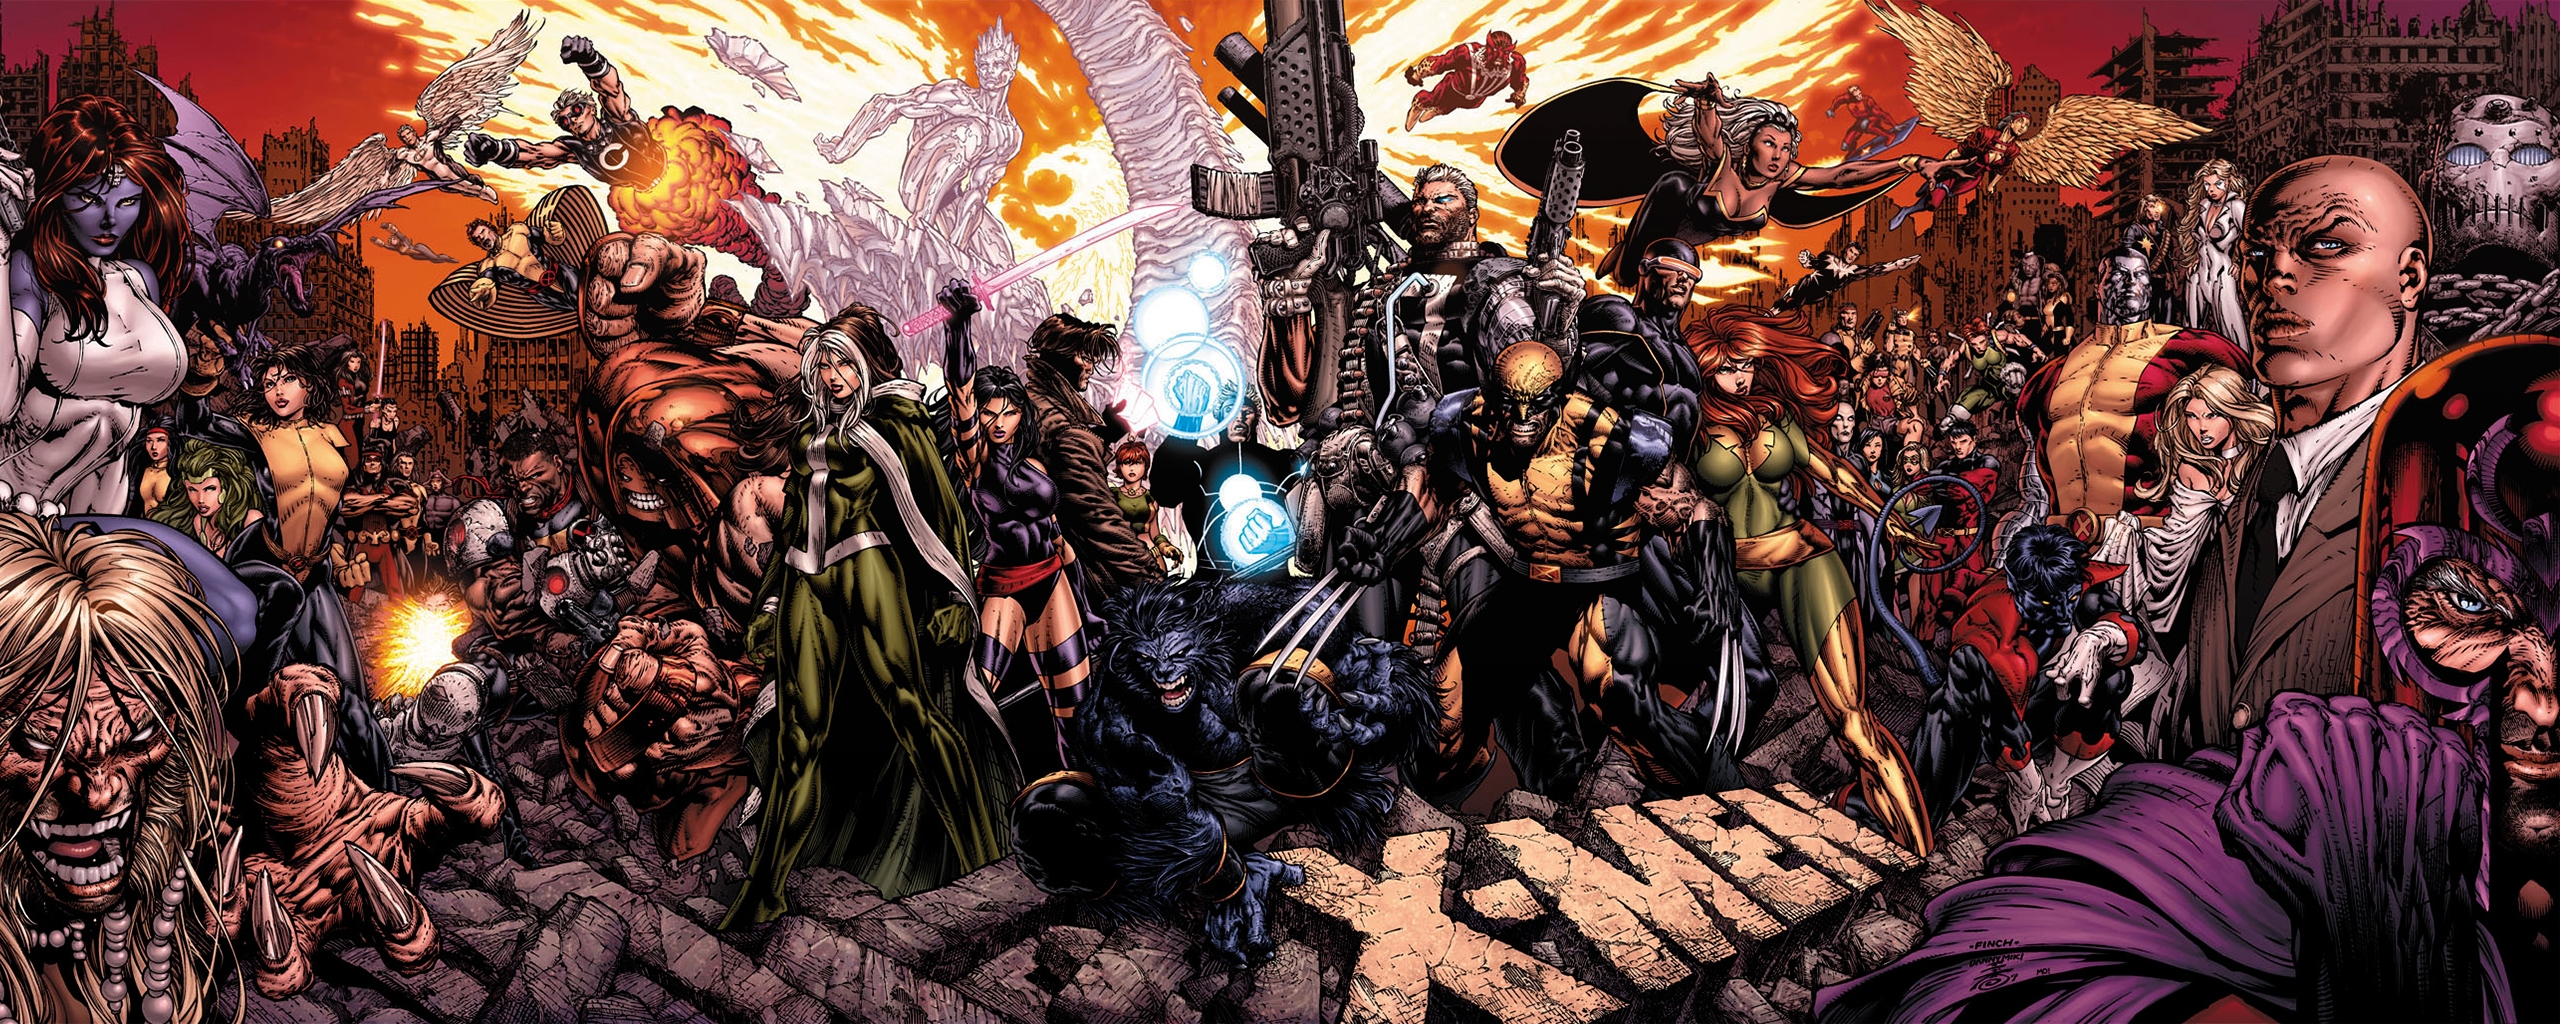 Download Comics X Men Wallpaper - X Men Desktop Wallpaper Hd , HD Wallpaper & Backgrounds